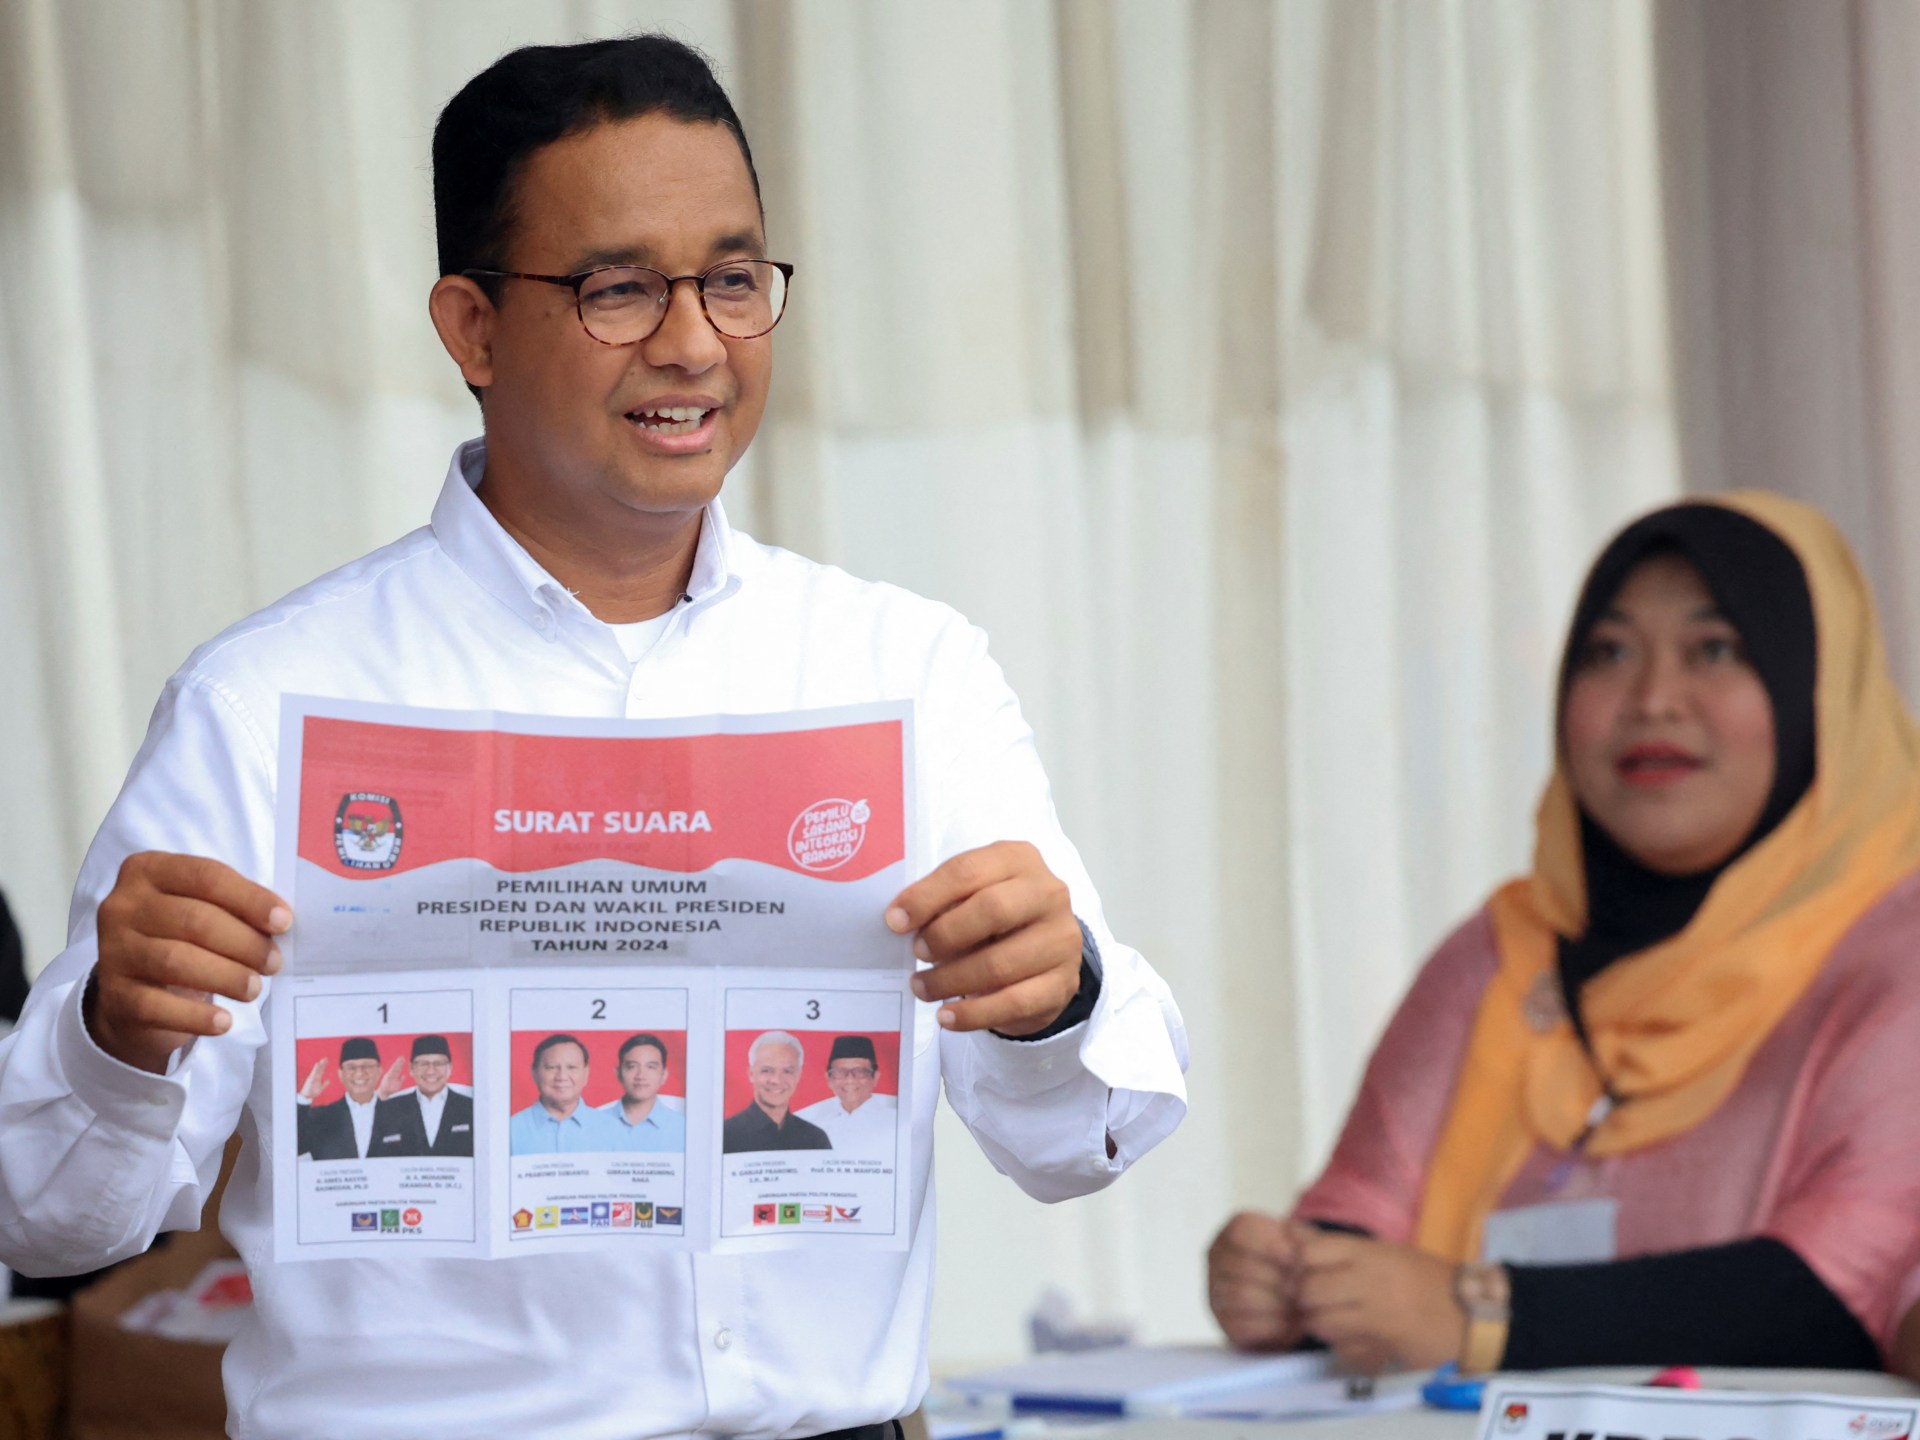 Anies Baswedan contestă alegerile prezidențiale din Indonezia și solicită o reluare a alegerilor  Știri electorale